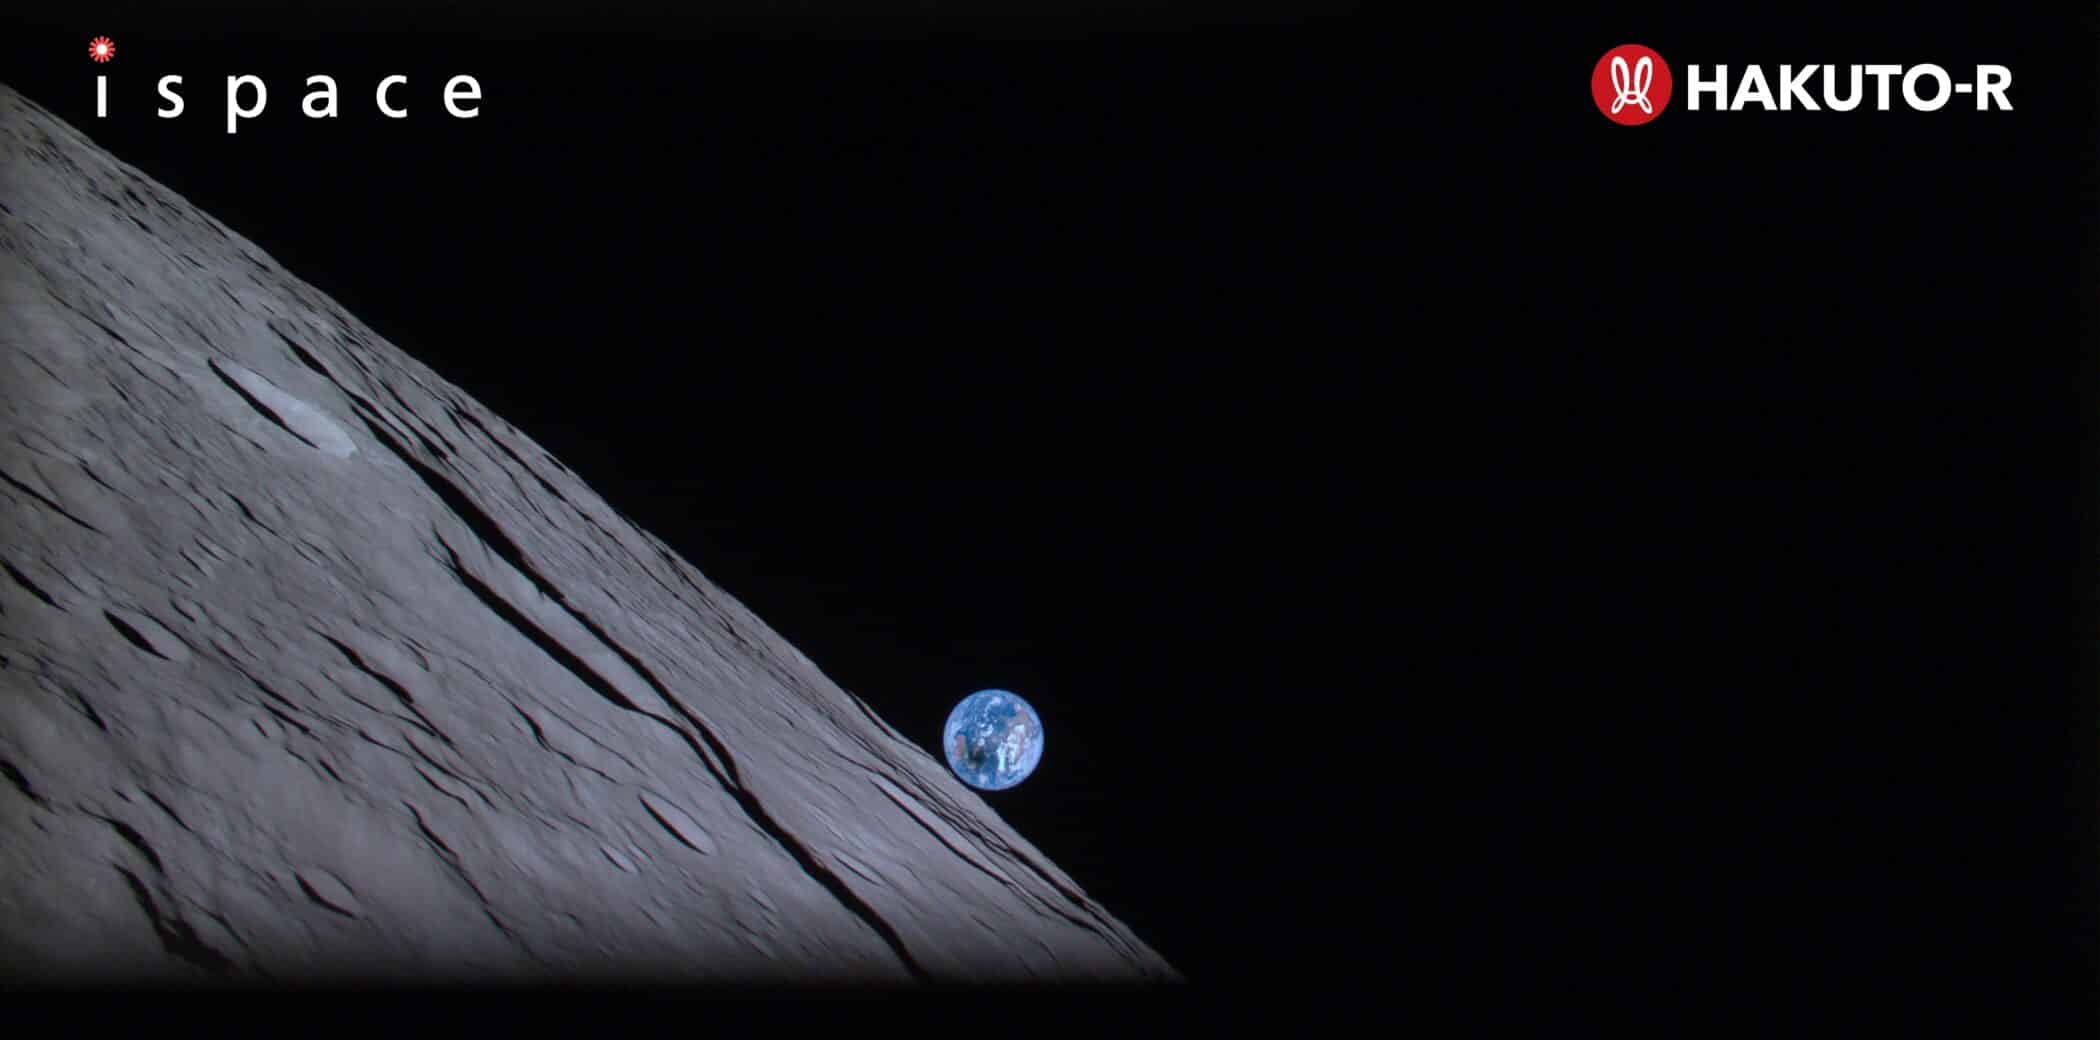 Hakuto-Rが「地球の出」を撮影、いよいよ明日月着陸へ